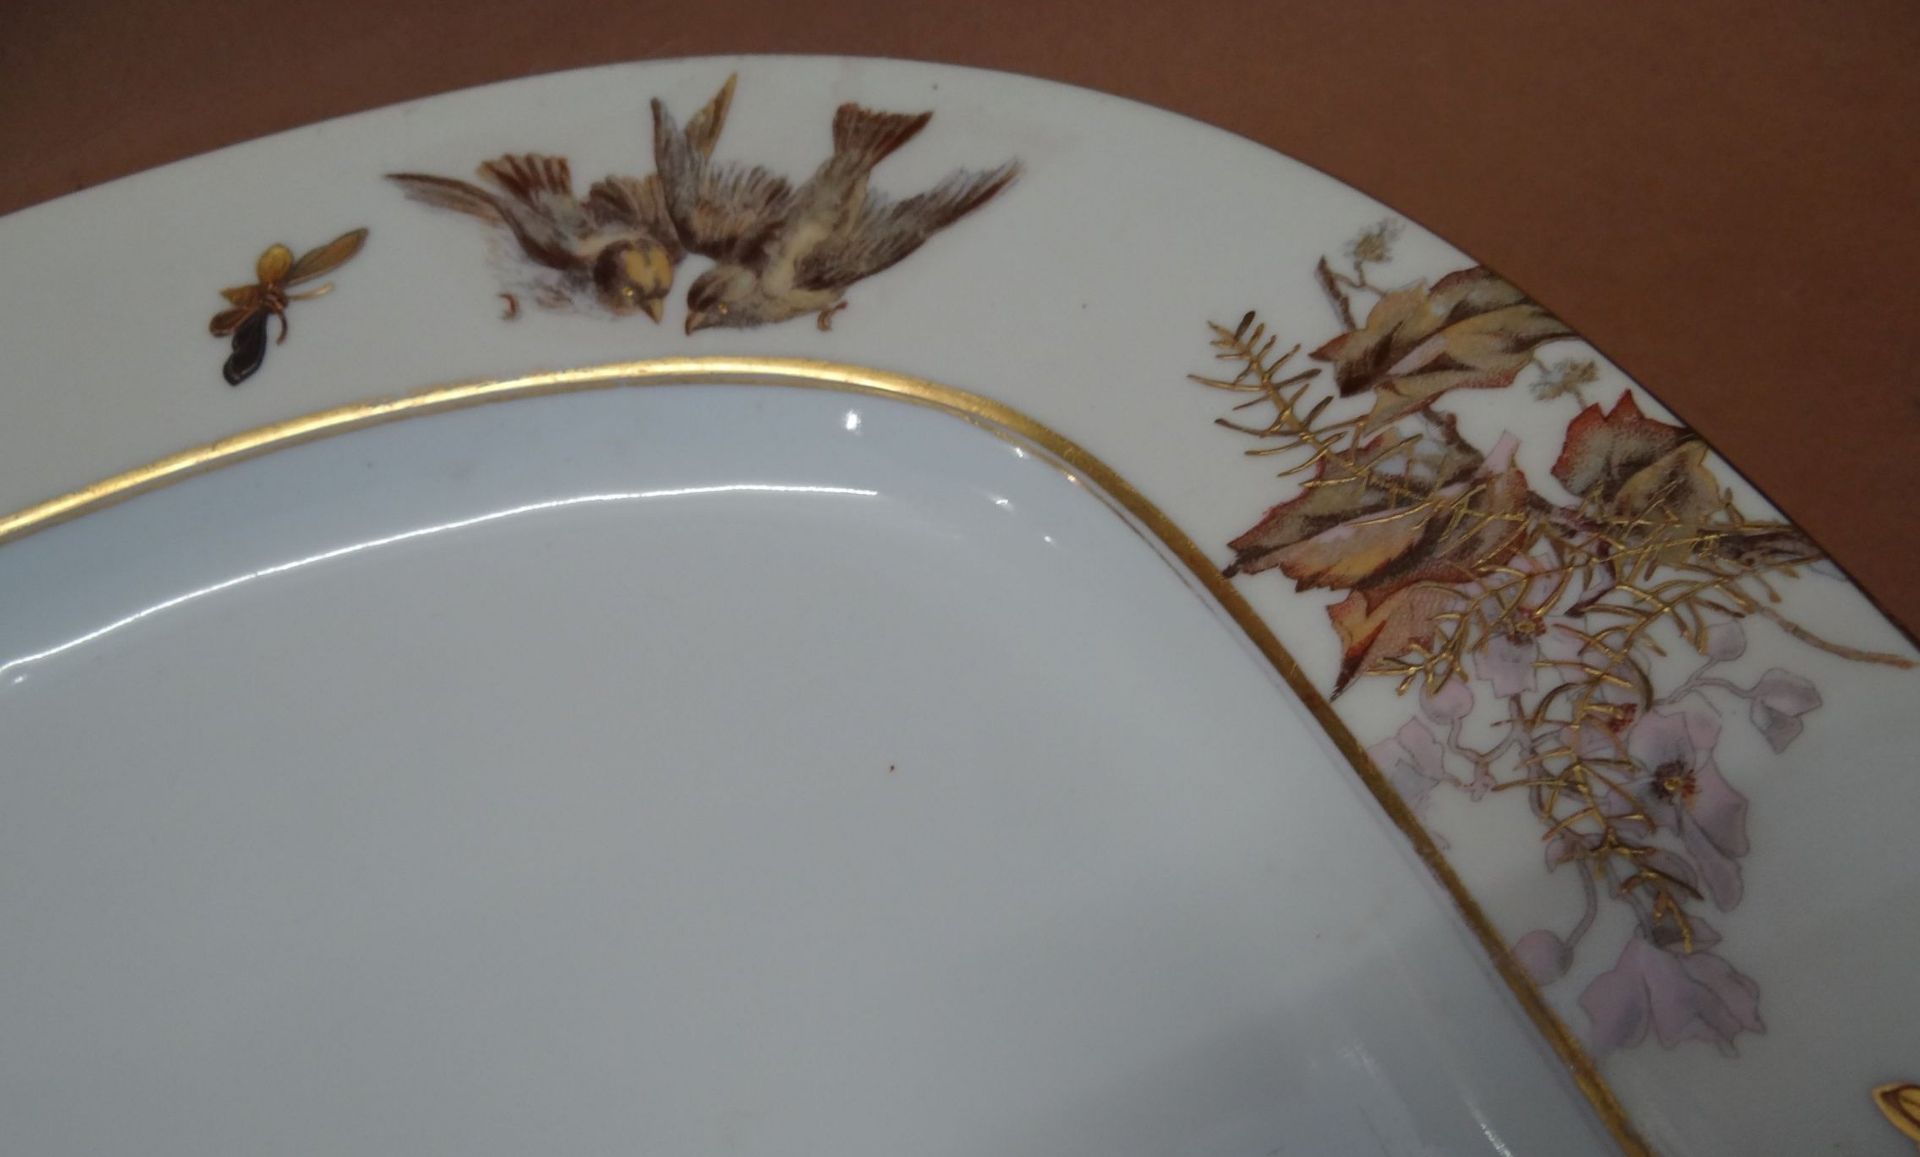 grosse eckige und runde Platte, bemalt mit Insekten Vögeln, Zweige, Goldstaffage, grüne Marke, - Bild 7 aus 10